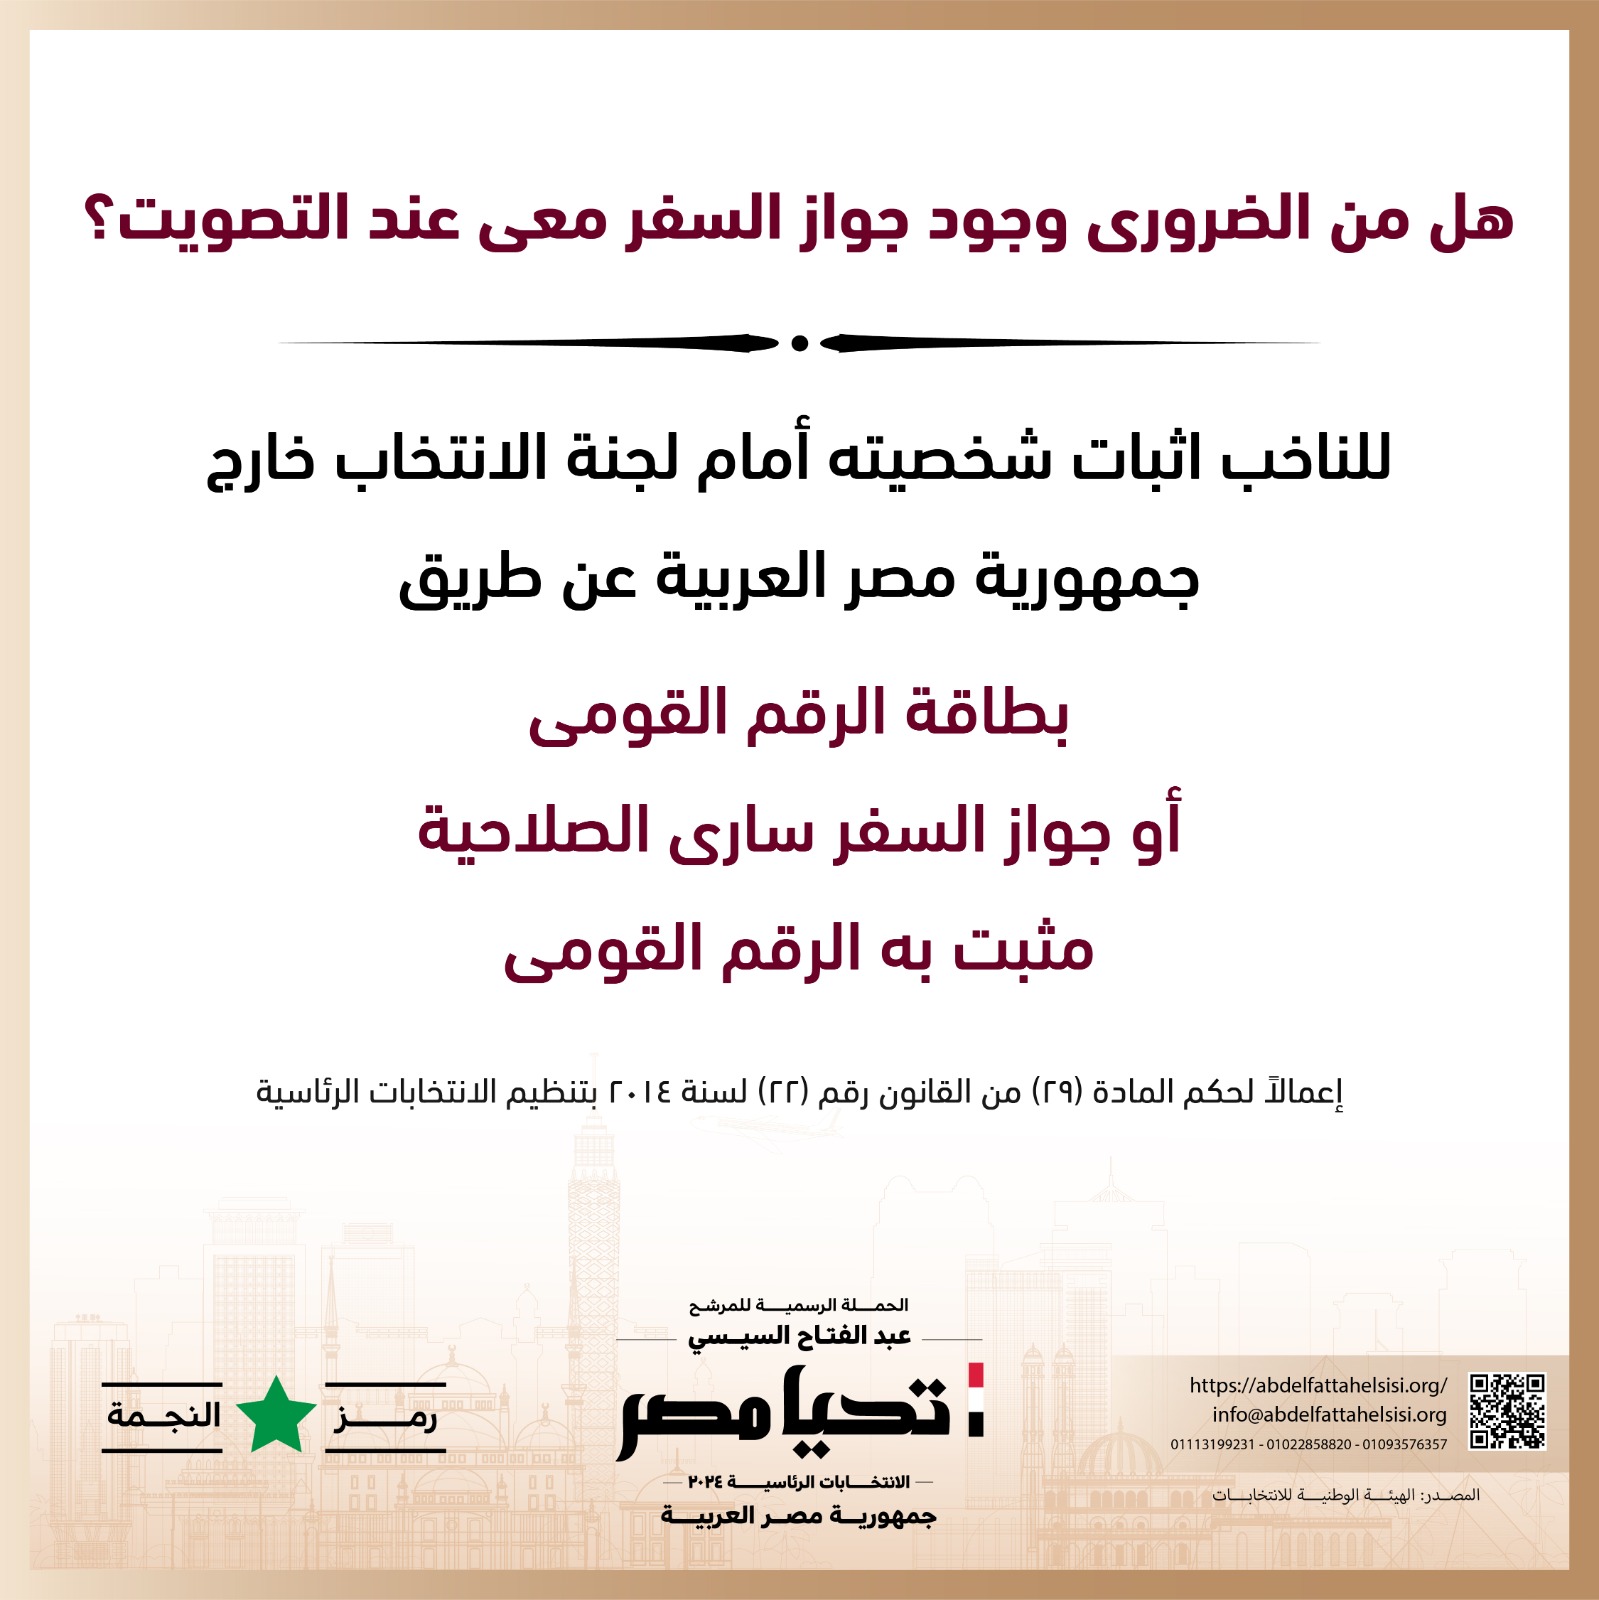 الحملة الرسمية للمرشح عبد الفتاح السيسي  (4)